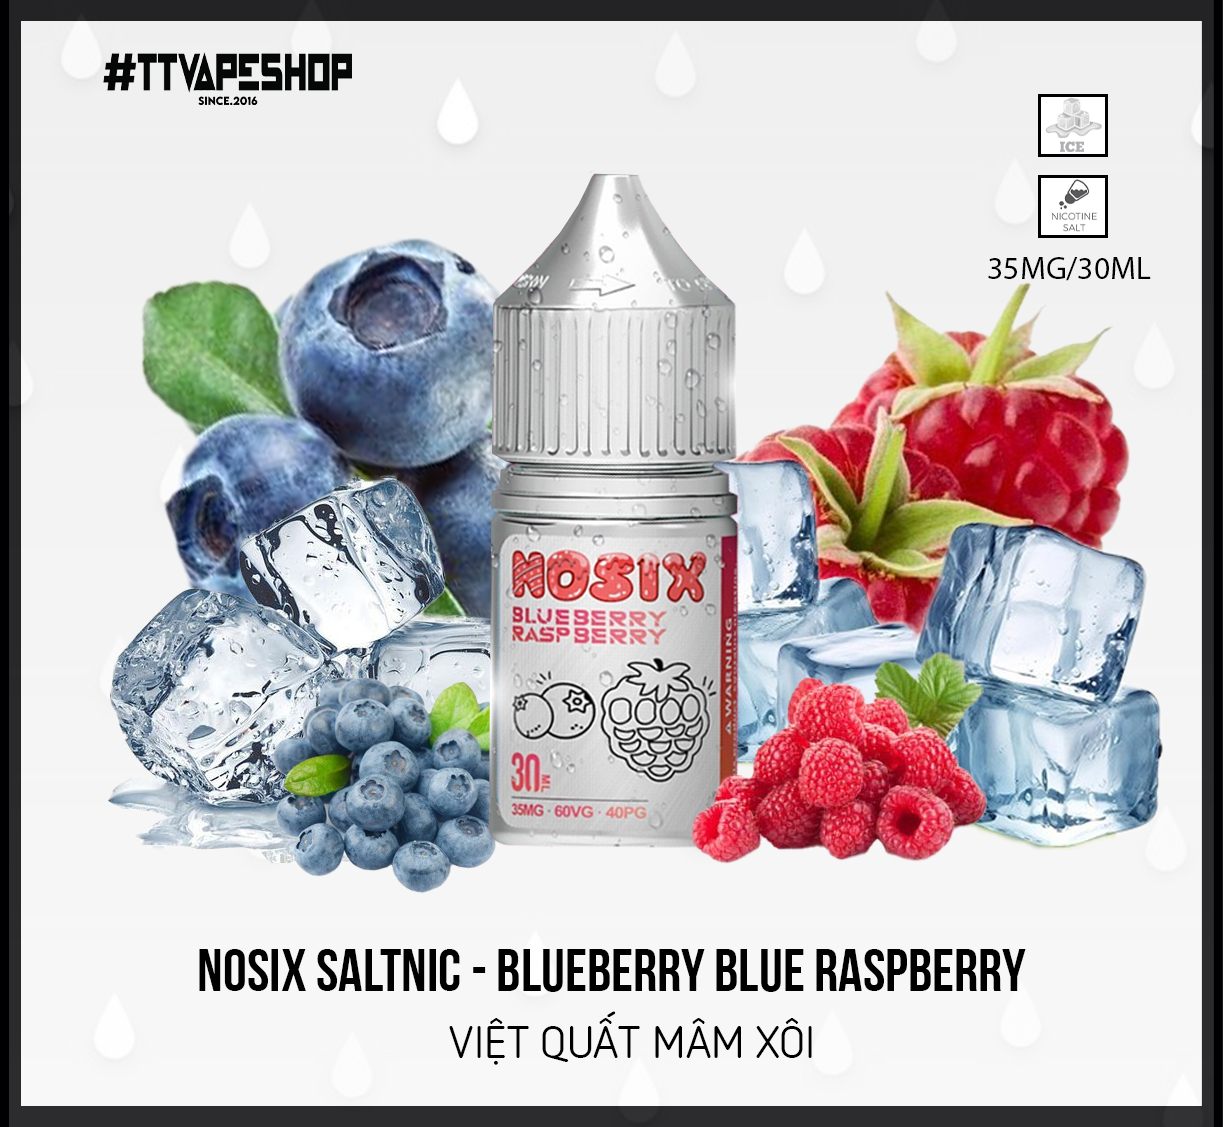 Nosix Saltnic Blue raspberry ( 35-55mg/30ml ) Việt Quất Mâm Xôi